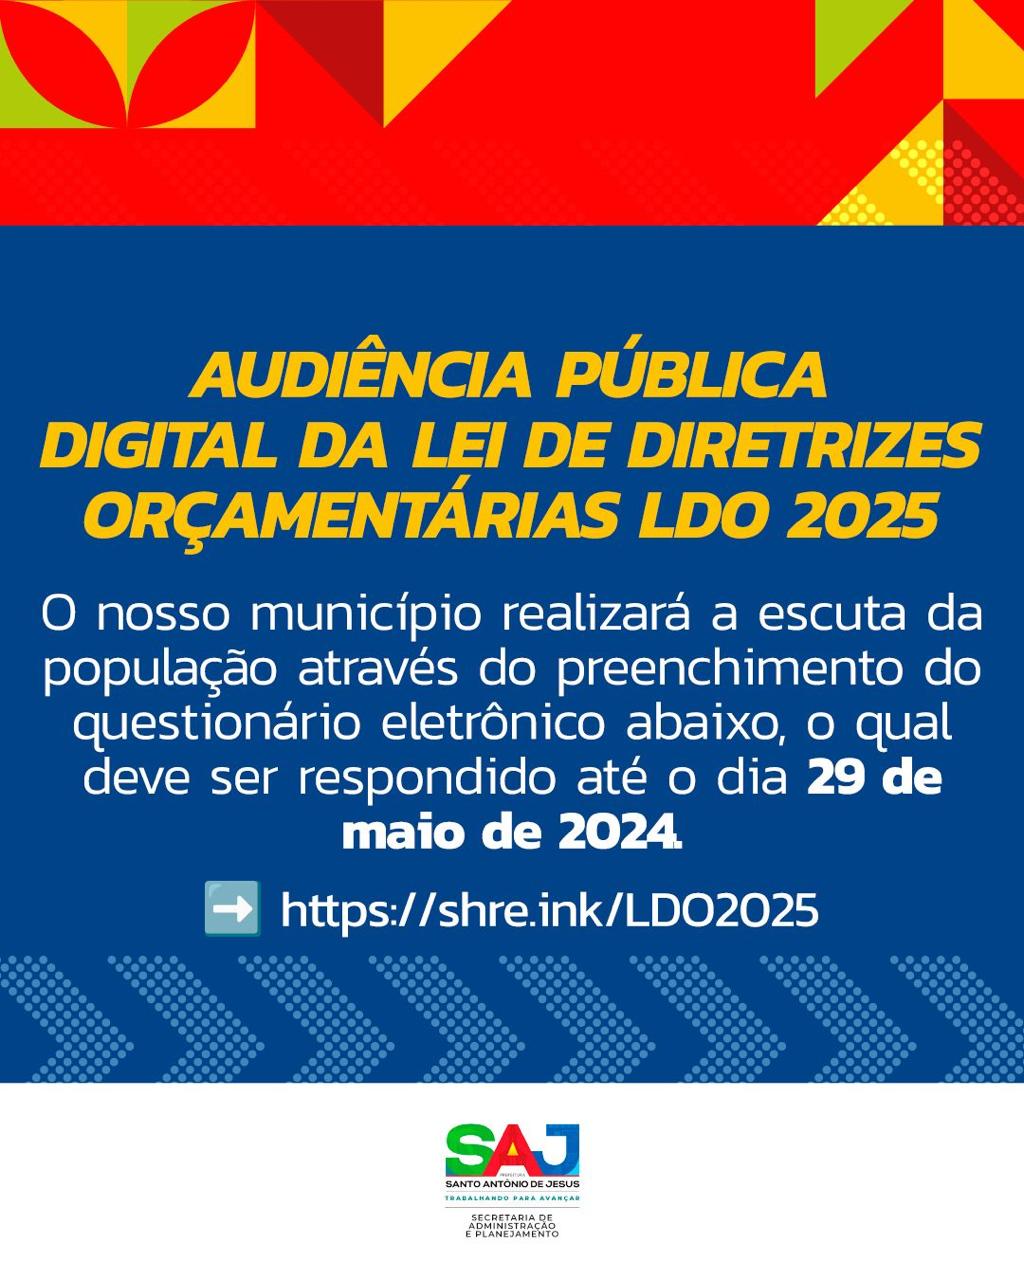 Prefeitura de Santo Antônio de Jesus informa à população acerca de escuta pública virtual a ser realizada até 29 de maio